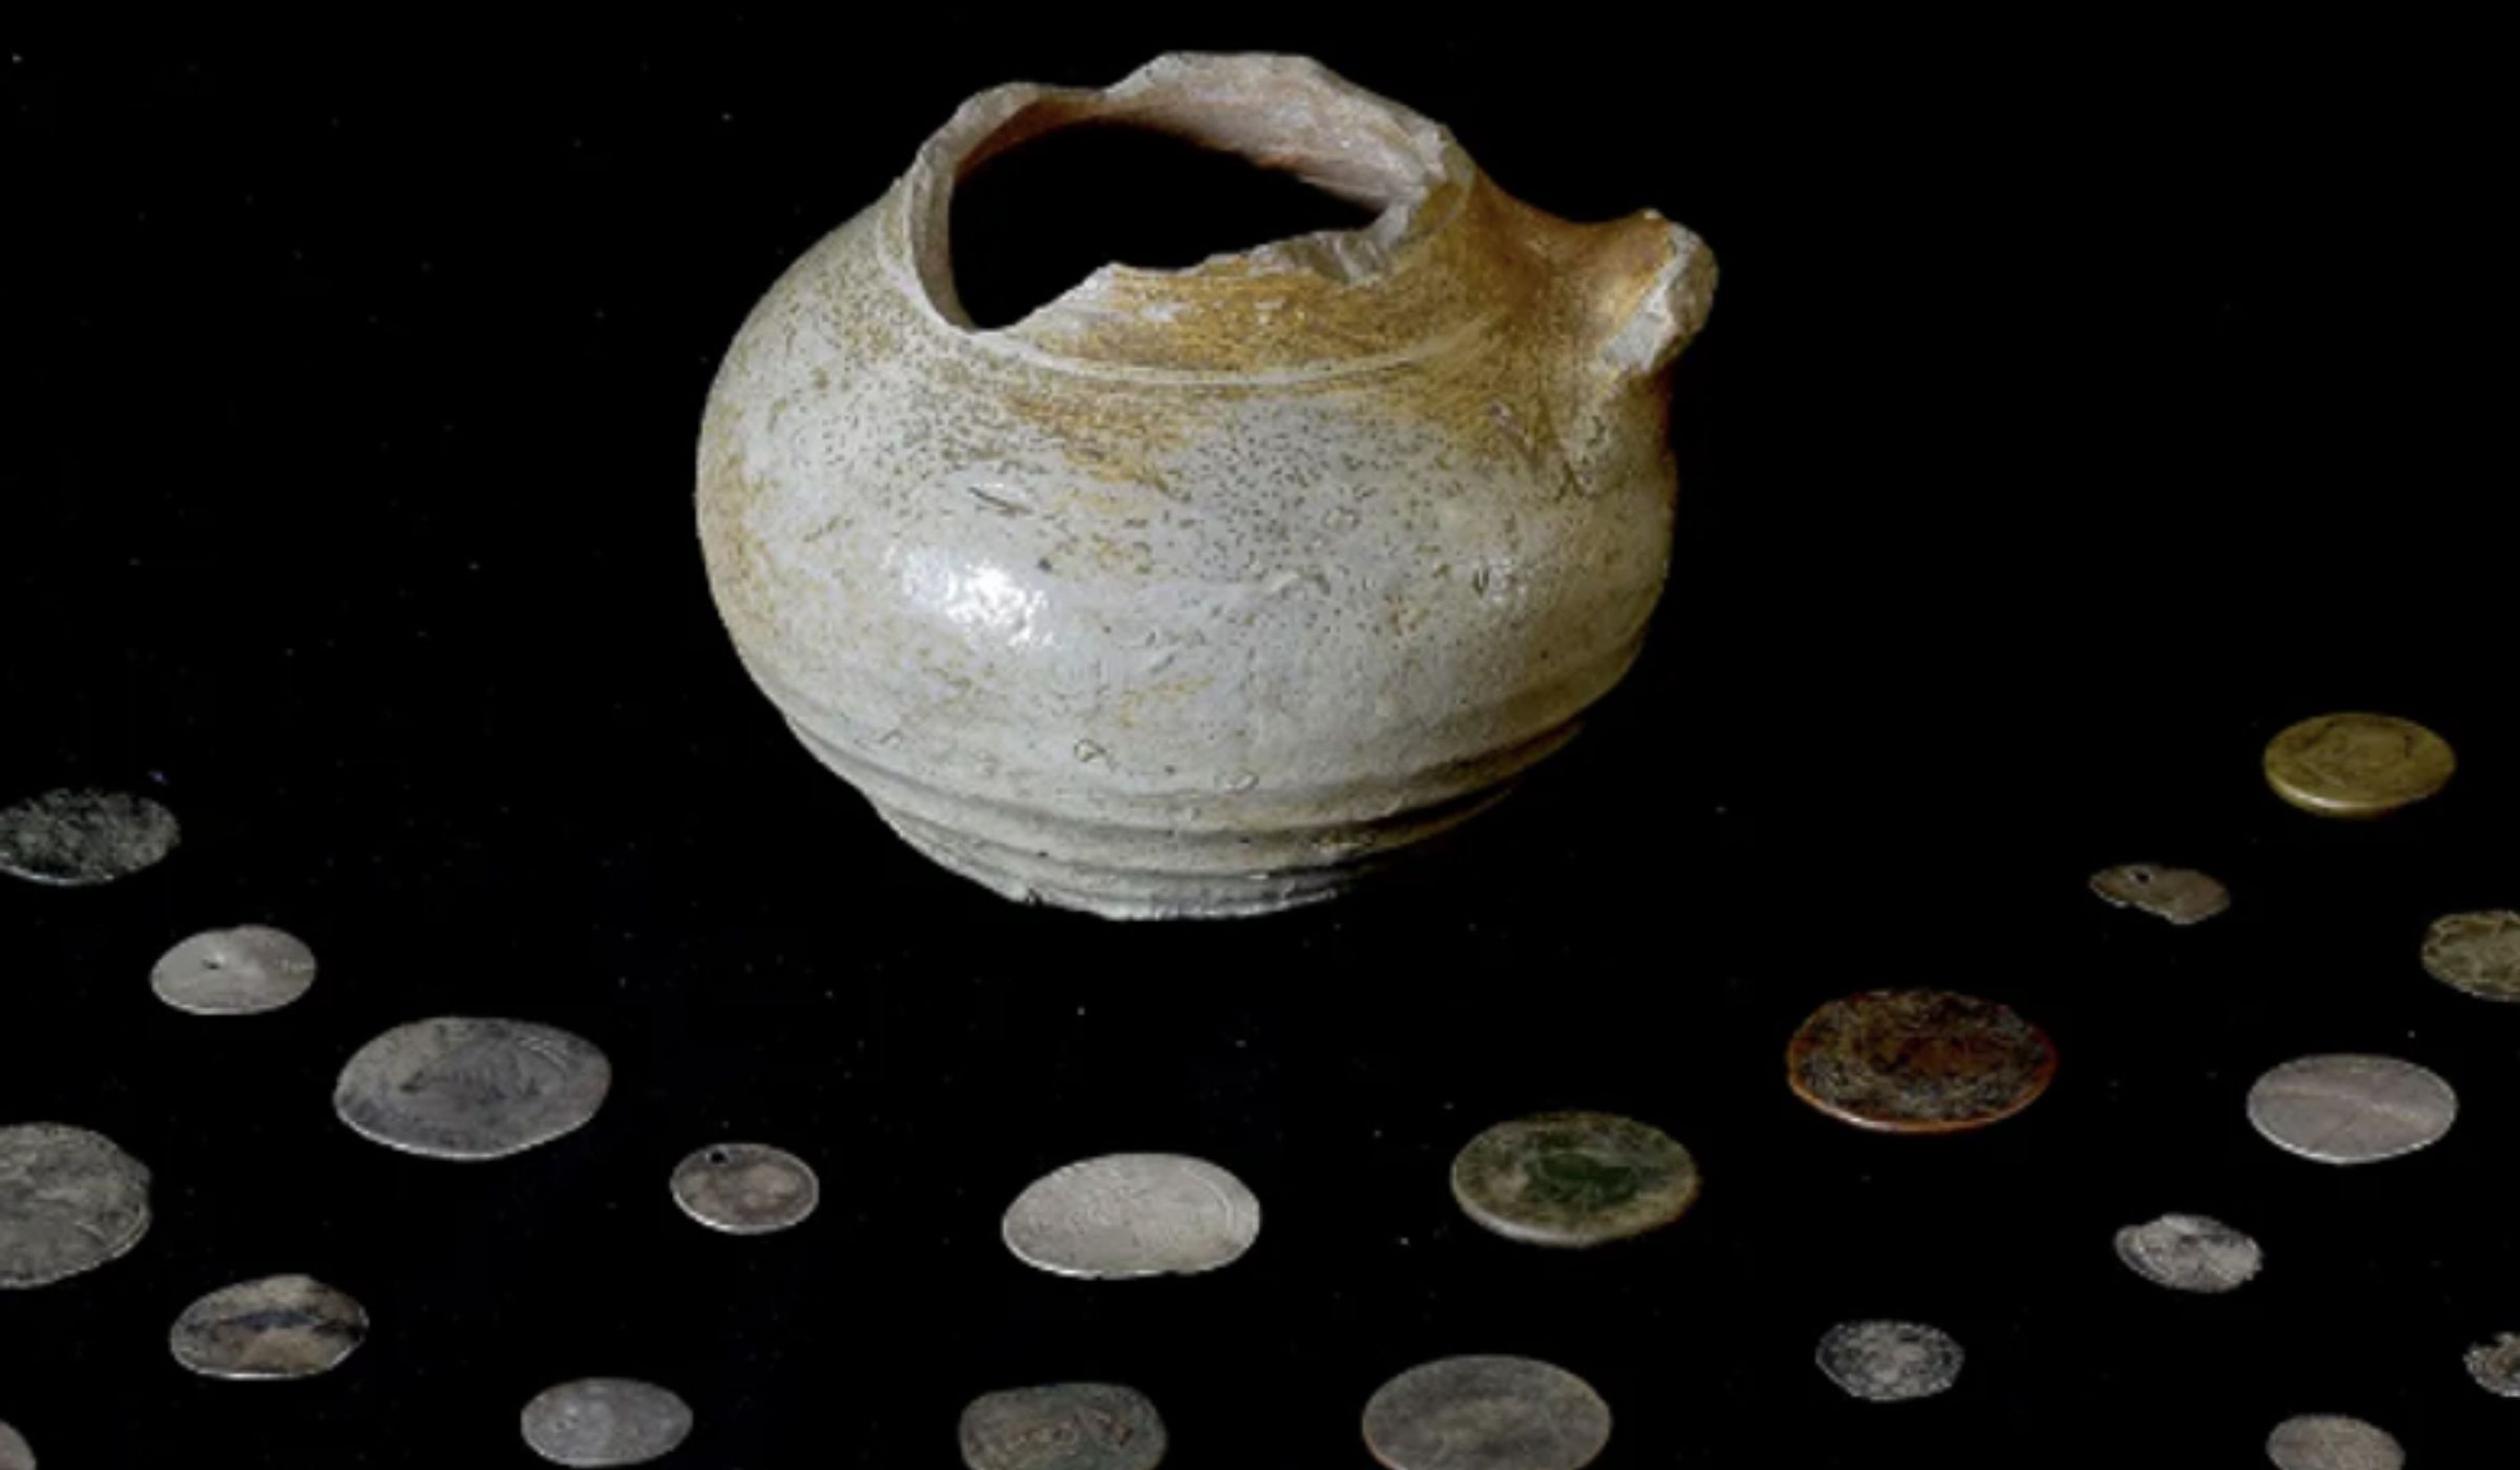 Descubren un tesoro de un antiguo clan escocés oculto en una olla dentro de una chimenea 